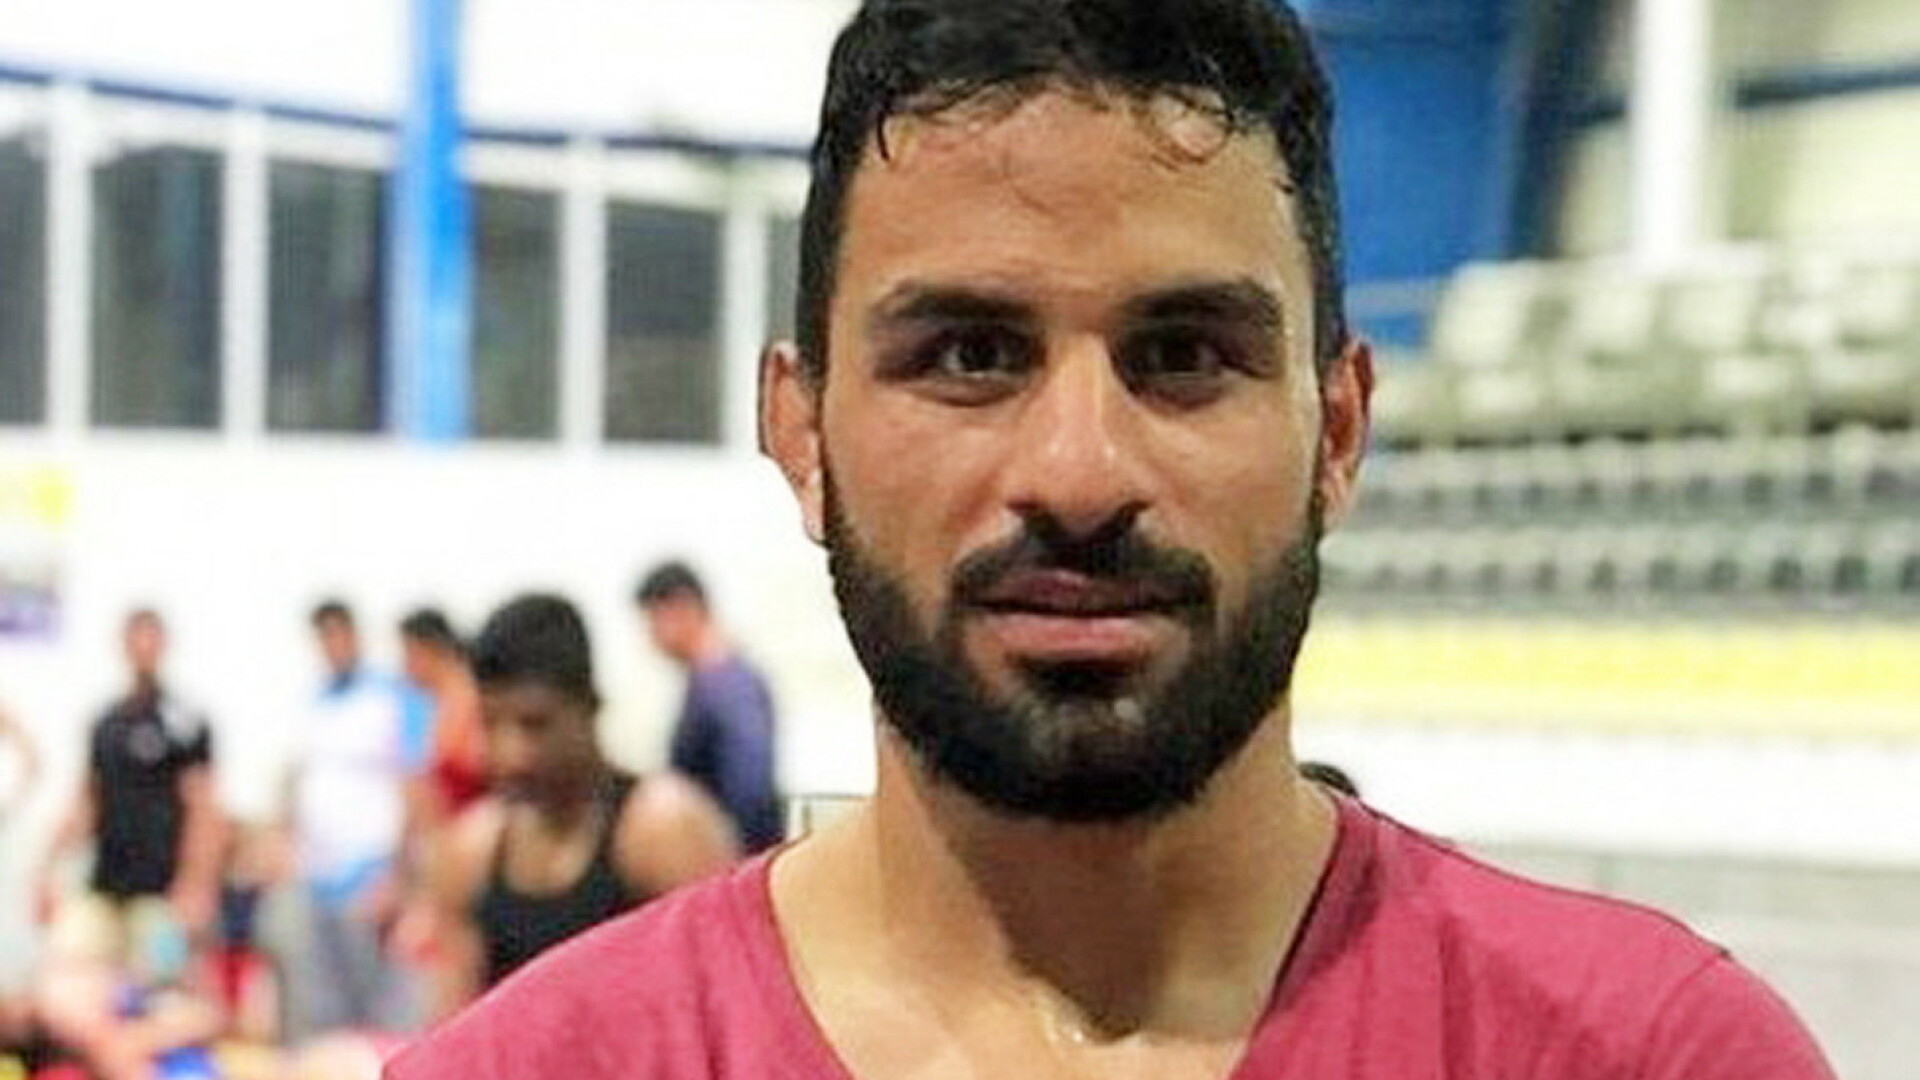 Luptătorul iranian Navid Afkari a fost executat. Sportivul avea doar 27 de ani